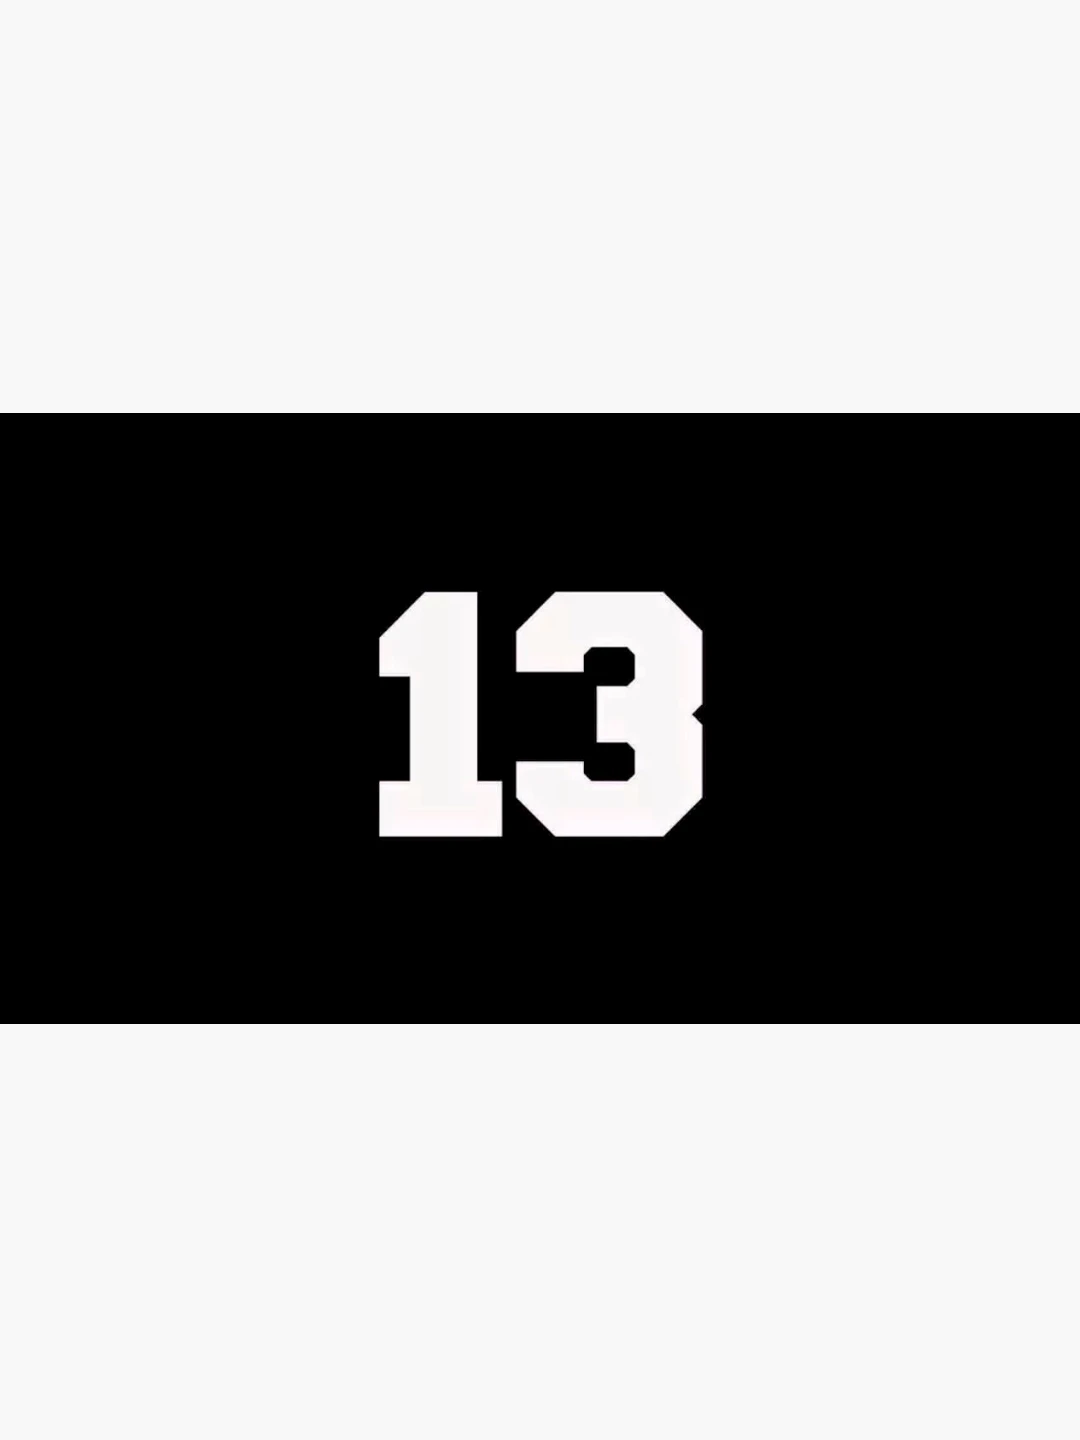 Цифра 13 на телефоне. 13 На черном фоне. Число 13 на черном фоне. 13 Логотип. Обои с цифрой 13.